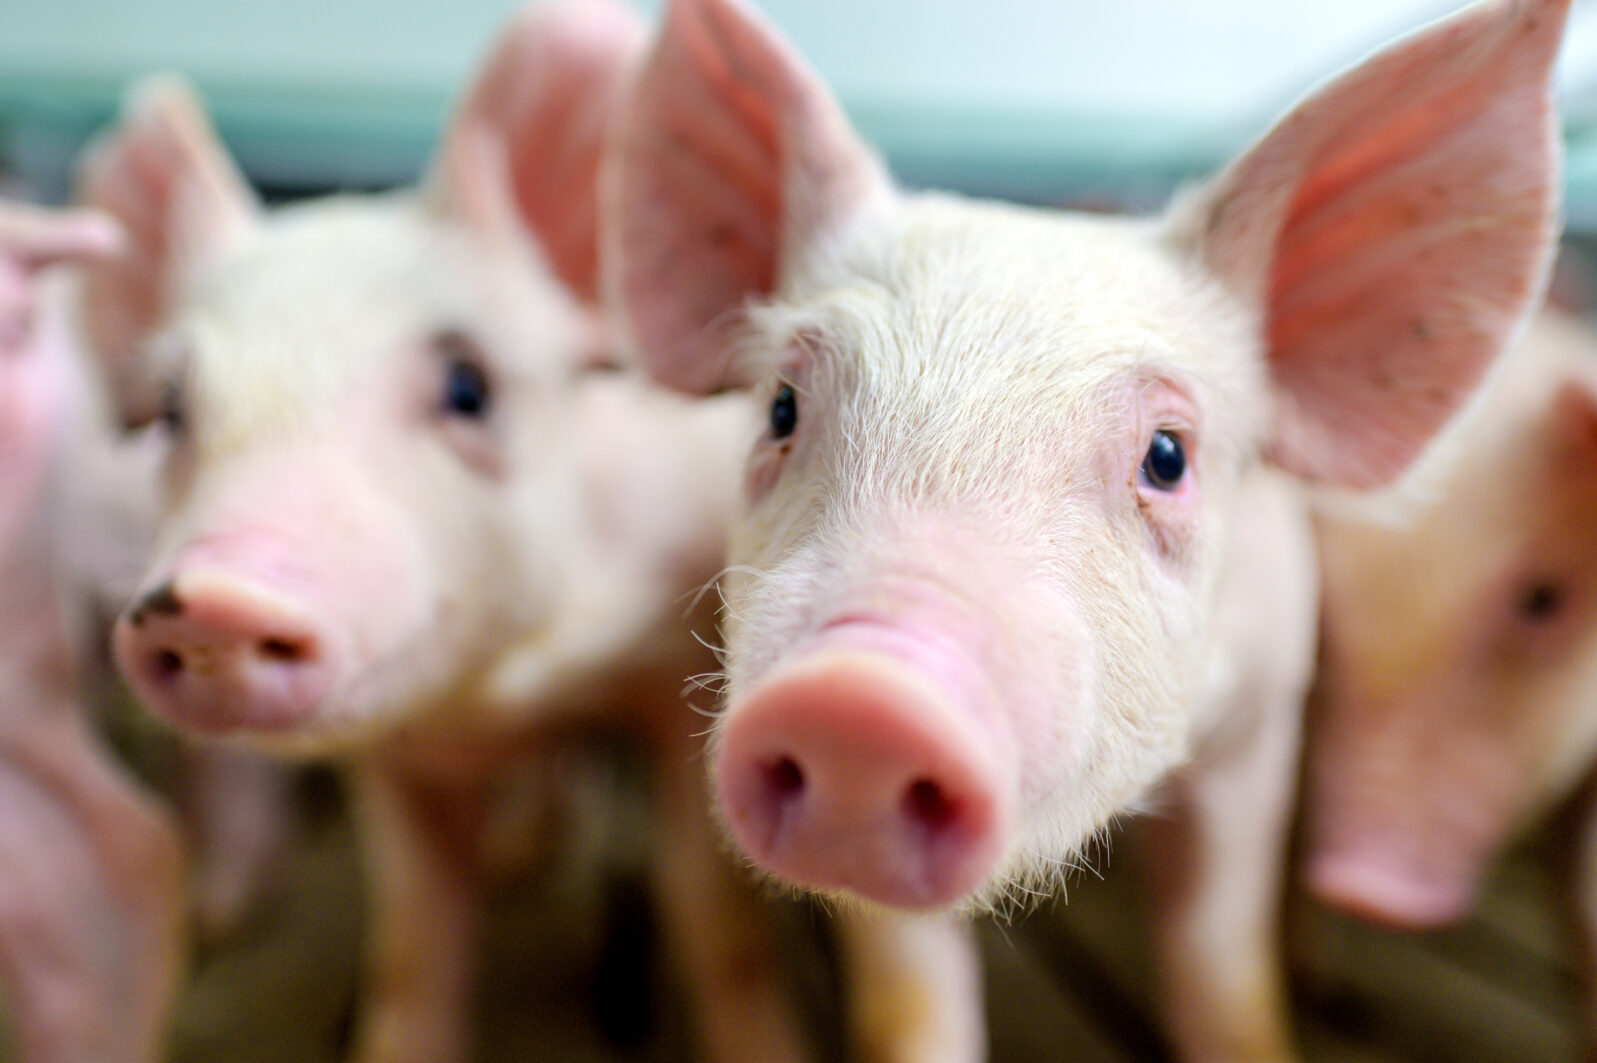 pig farm industry farming hog barn pork